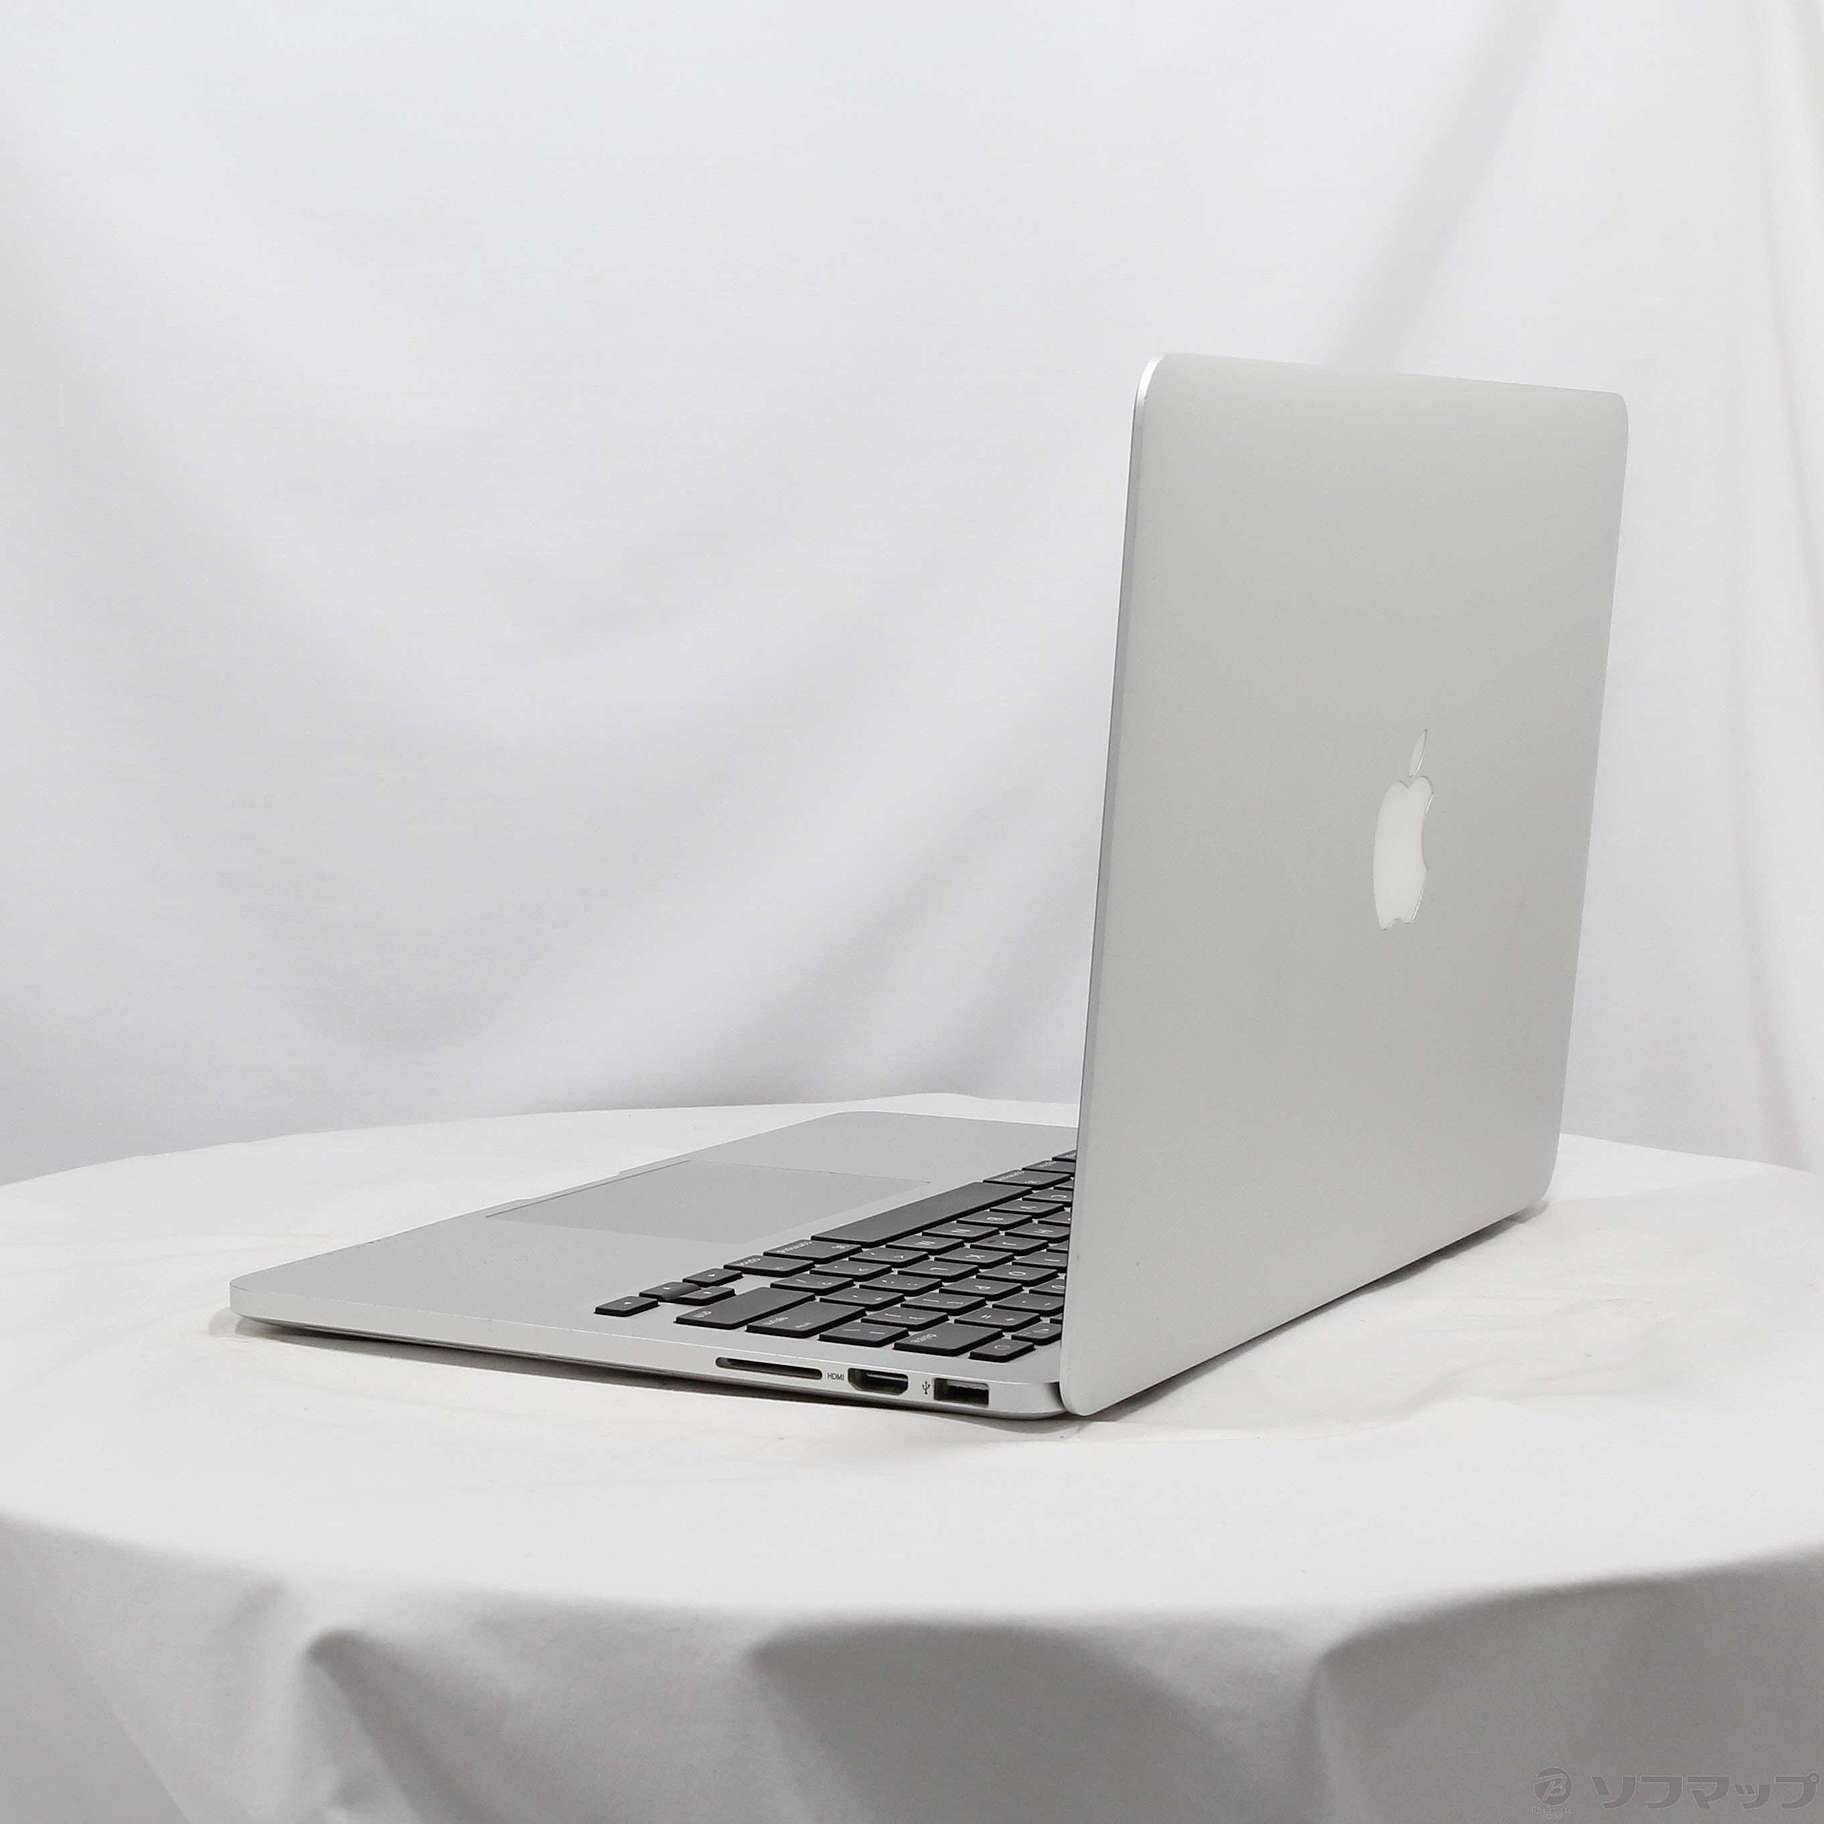 【使用回数:3】 APPLE MacBook Pro 2014 MGX82J/A